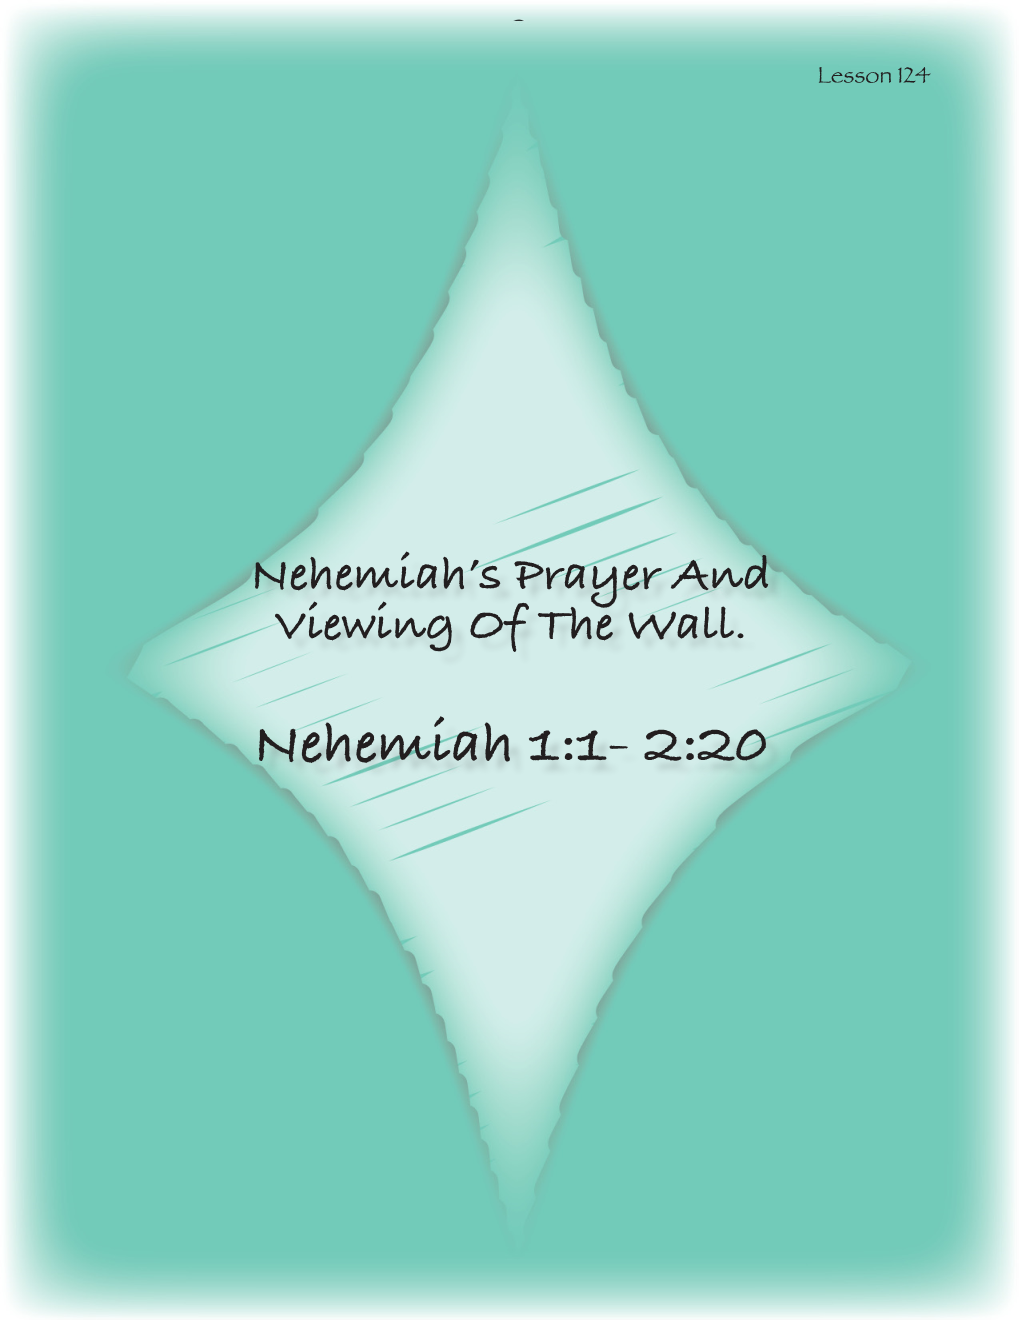 Nehemiah 1:1- 2:20